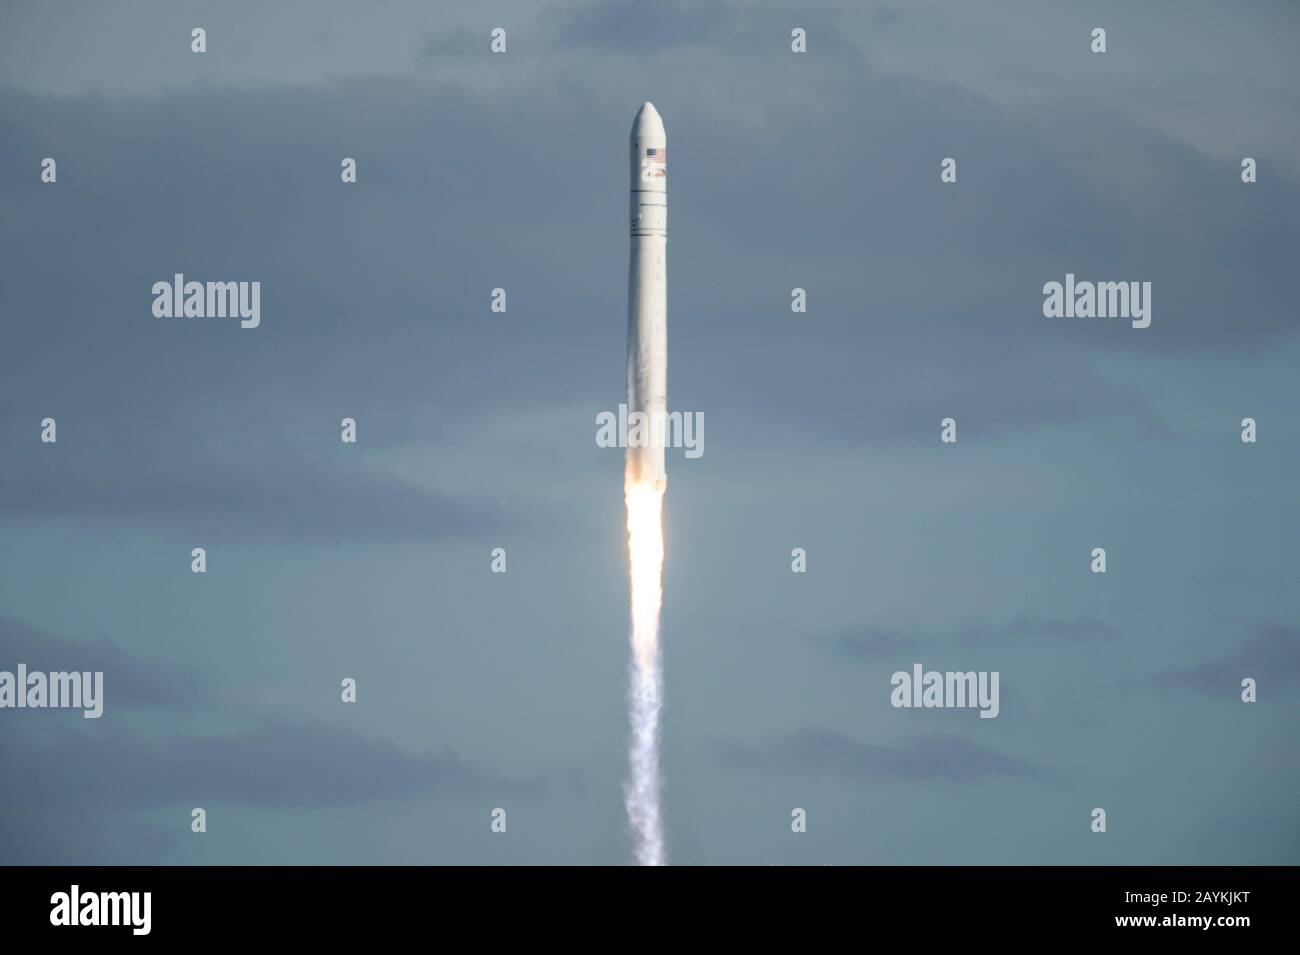 Wallops Island, Estados Unidos. 15 de febrero de 2020. El cohete Antares que transporta la nave espacial Cygnus cargo se levanta del centro de vuelo Wallops de la NASA en la isla Wallops, Virginia, Estados Unidos, el 15 de febrero de 2020. El sábado se lanzó un cohete estadounidense desde la instalación de vuelo Wallops de la NASA en la costa oriental de Virginia, que transportaba carga con la misión de reabastecimiento de la agencia espacial para la Estación Espacial Internacional (ISS). Crédito: Ting Shen/Xinhua/Alamy Noticias En Vivo Foto de stock